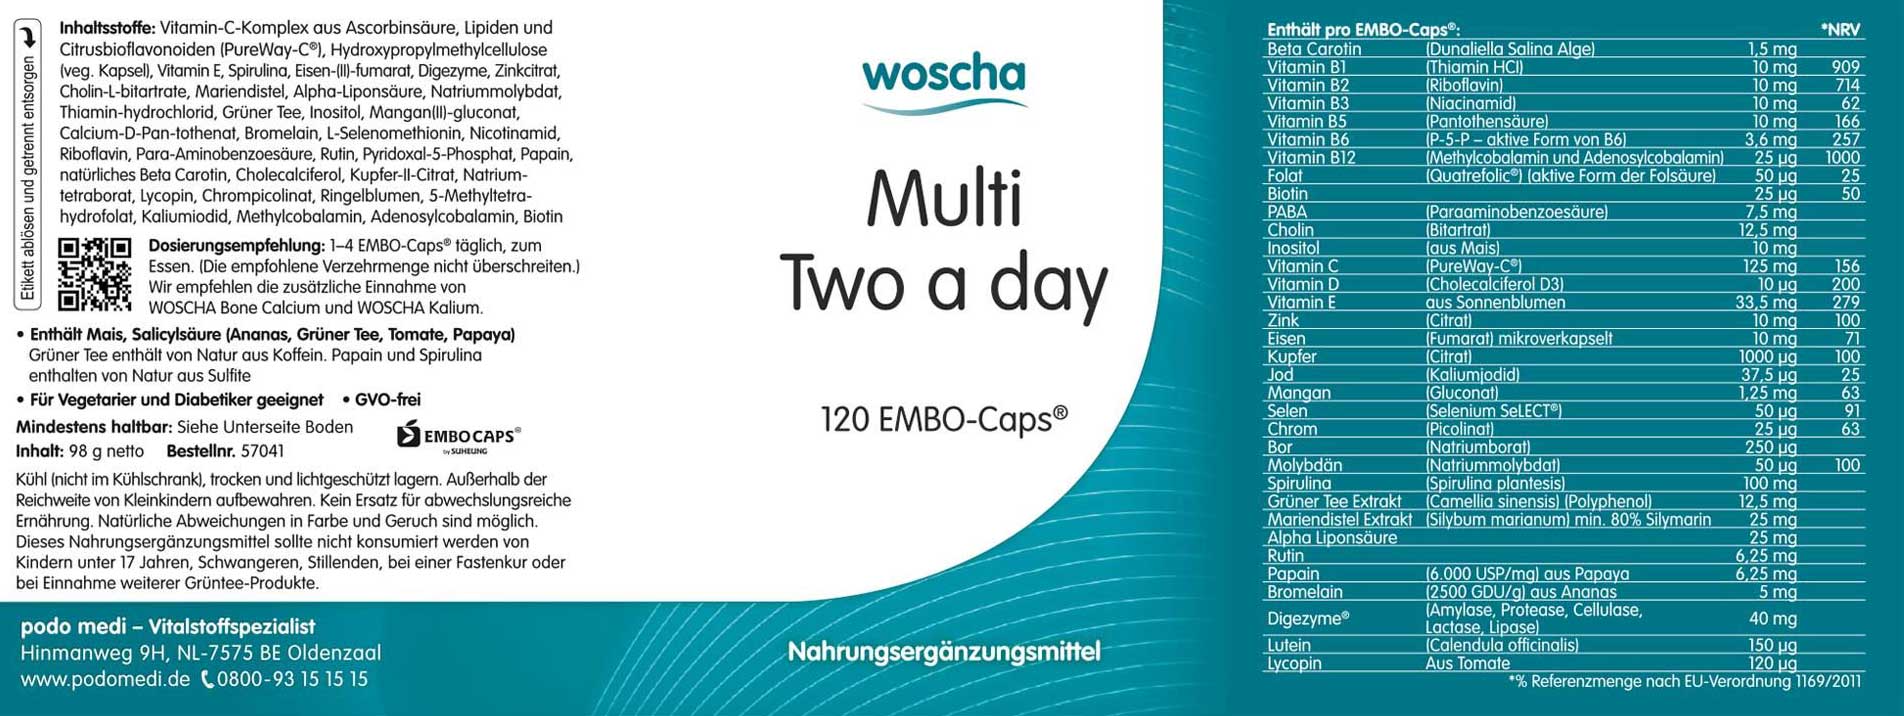 Woscha Multi Two a day von podo medi beinhaltet 120 Kapseln Etikett